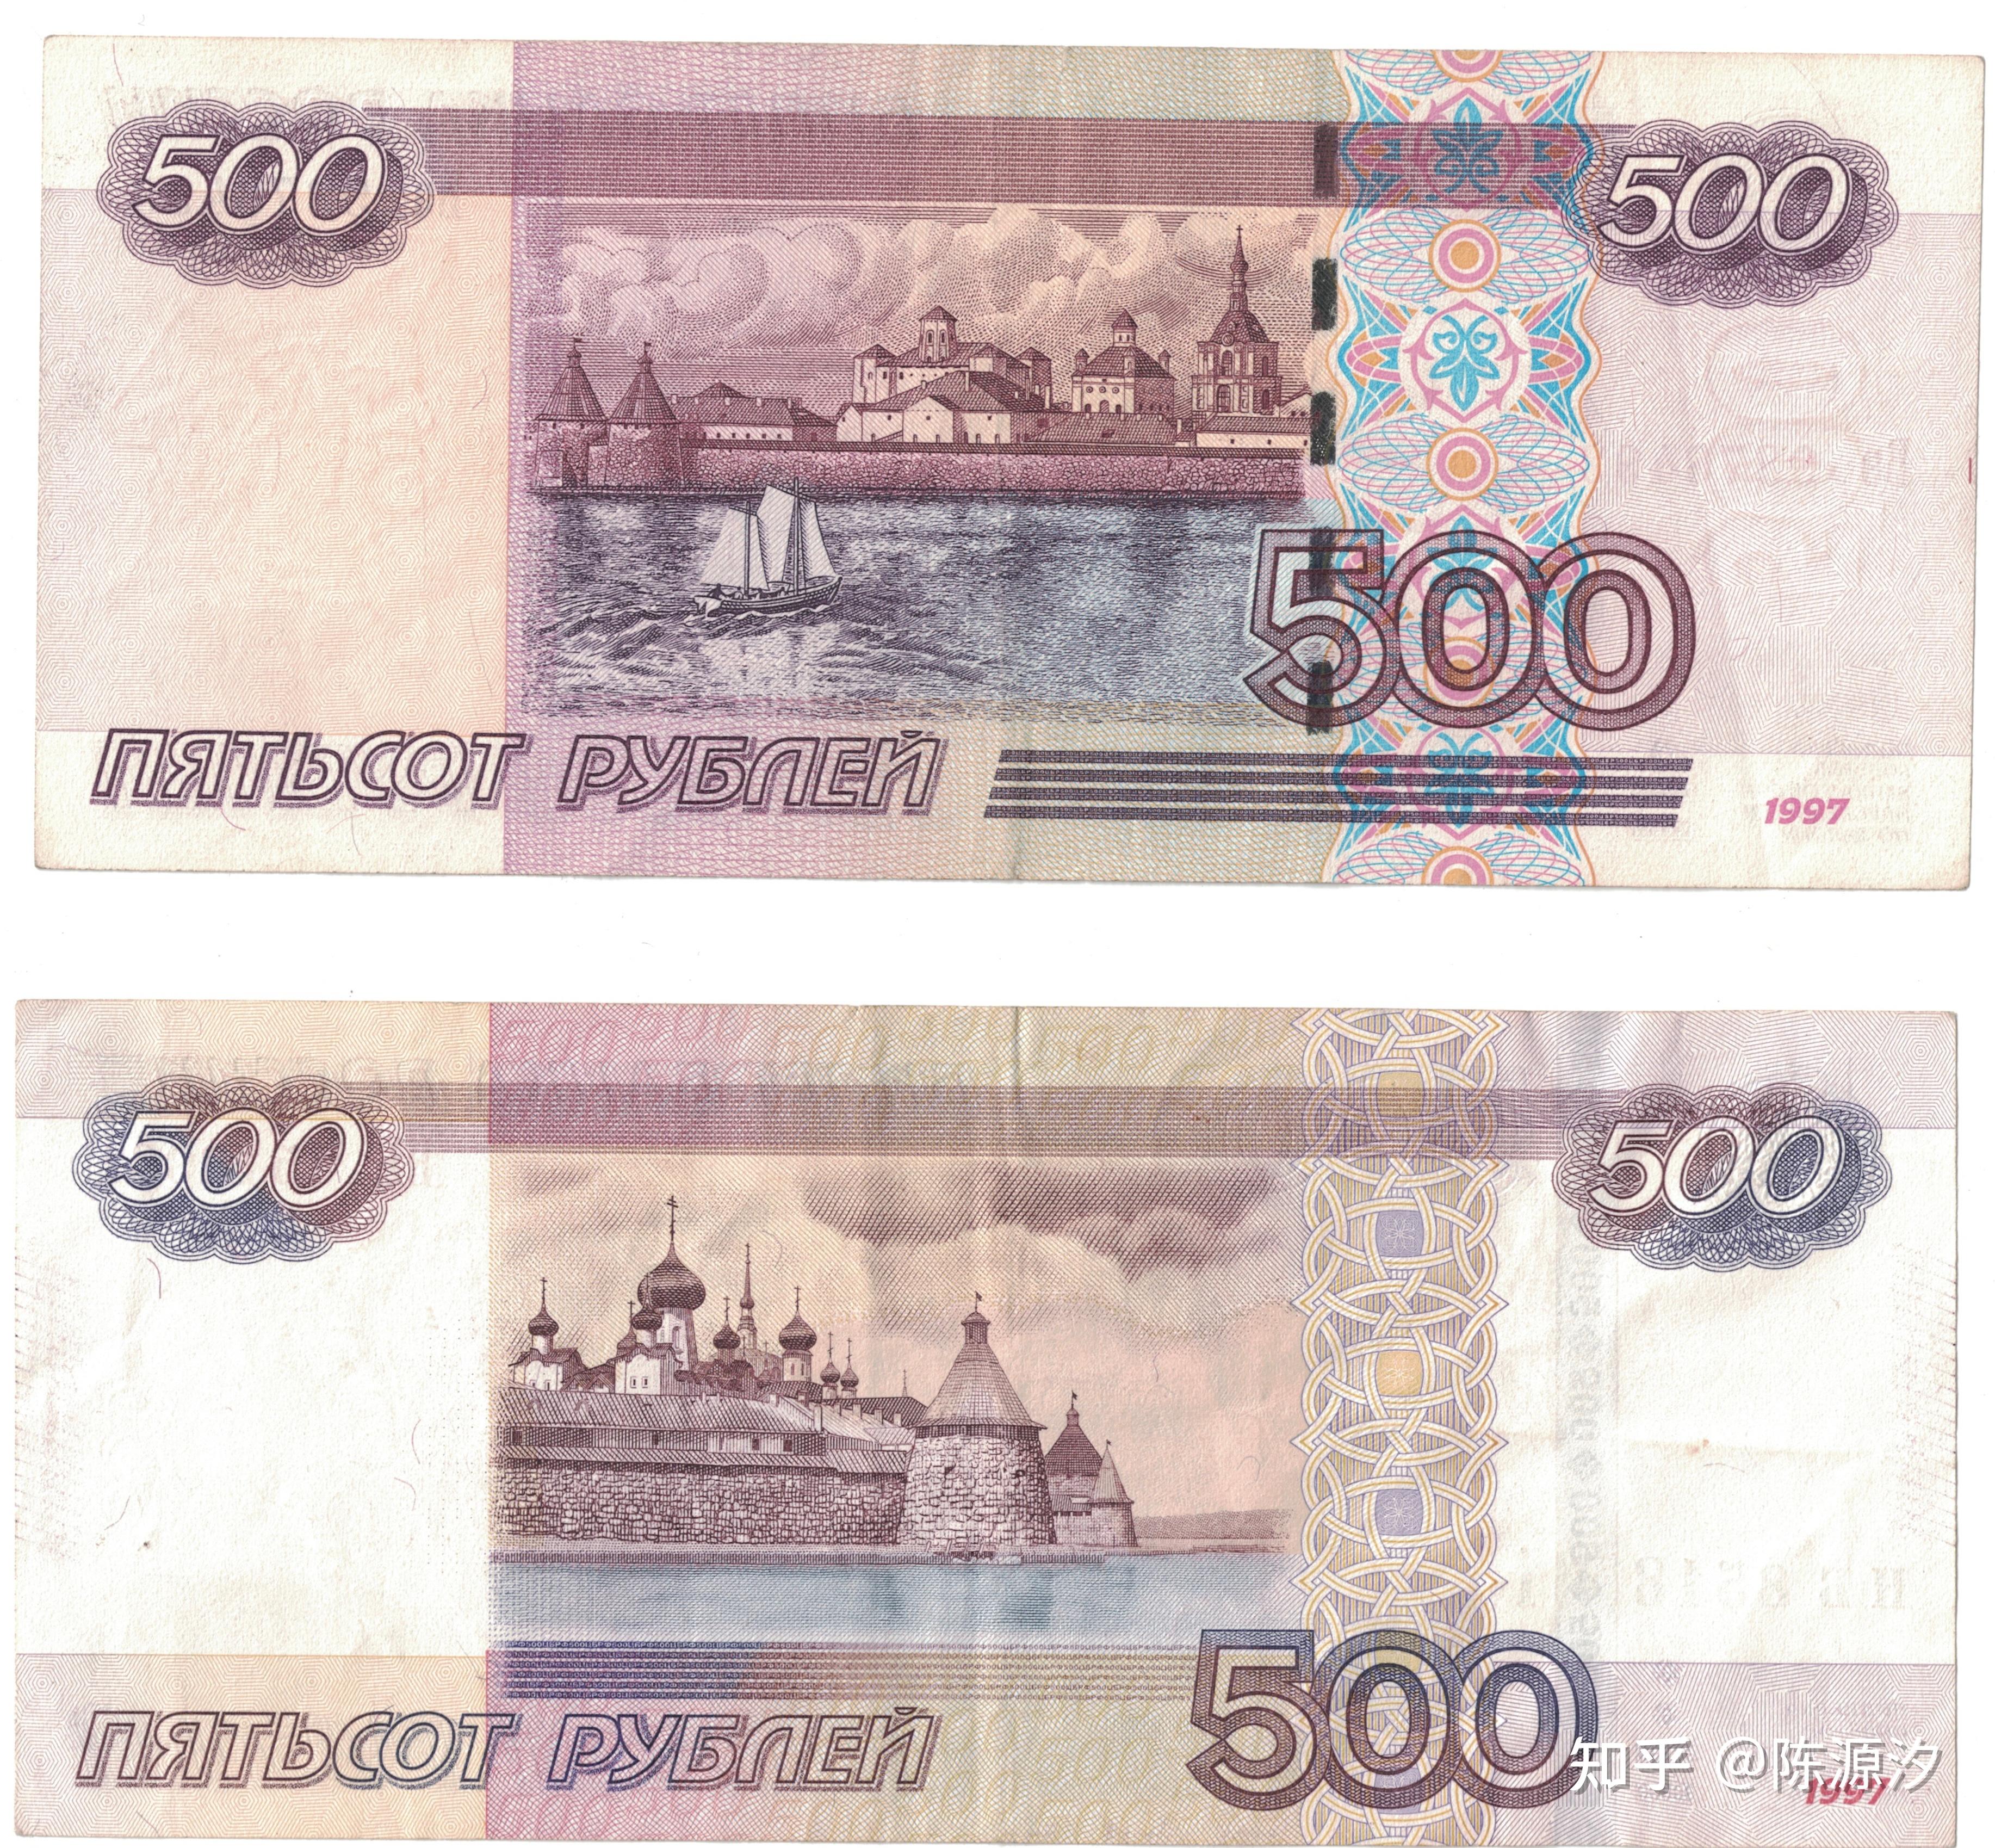 俄罗斯10000卢布图片图片